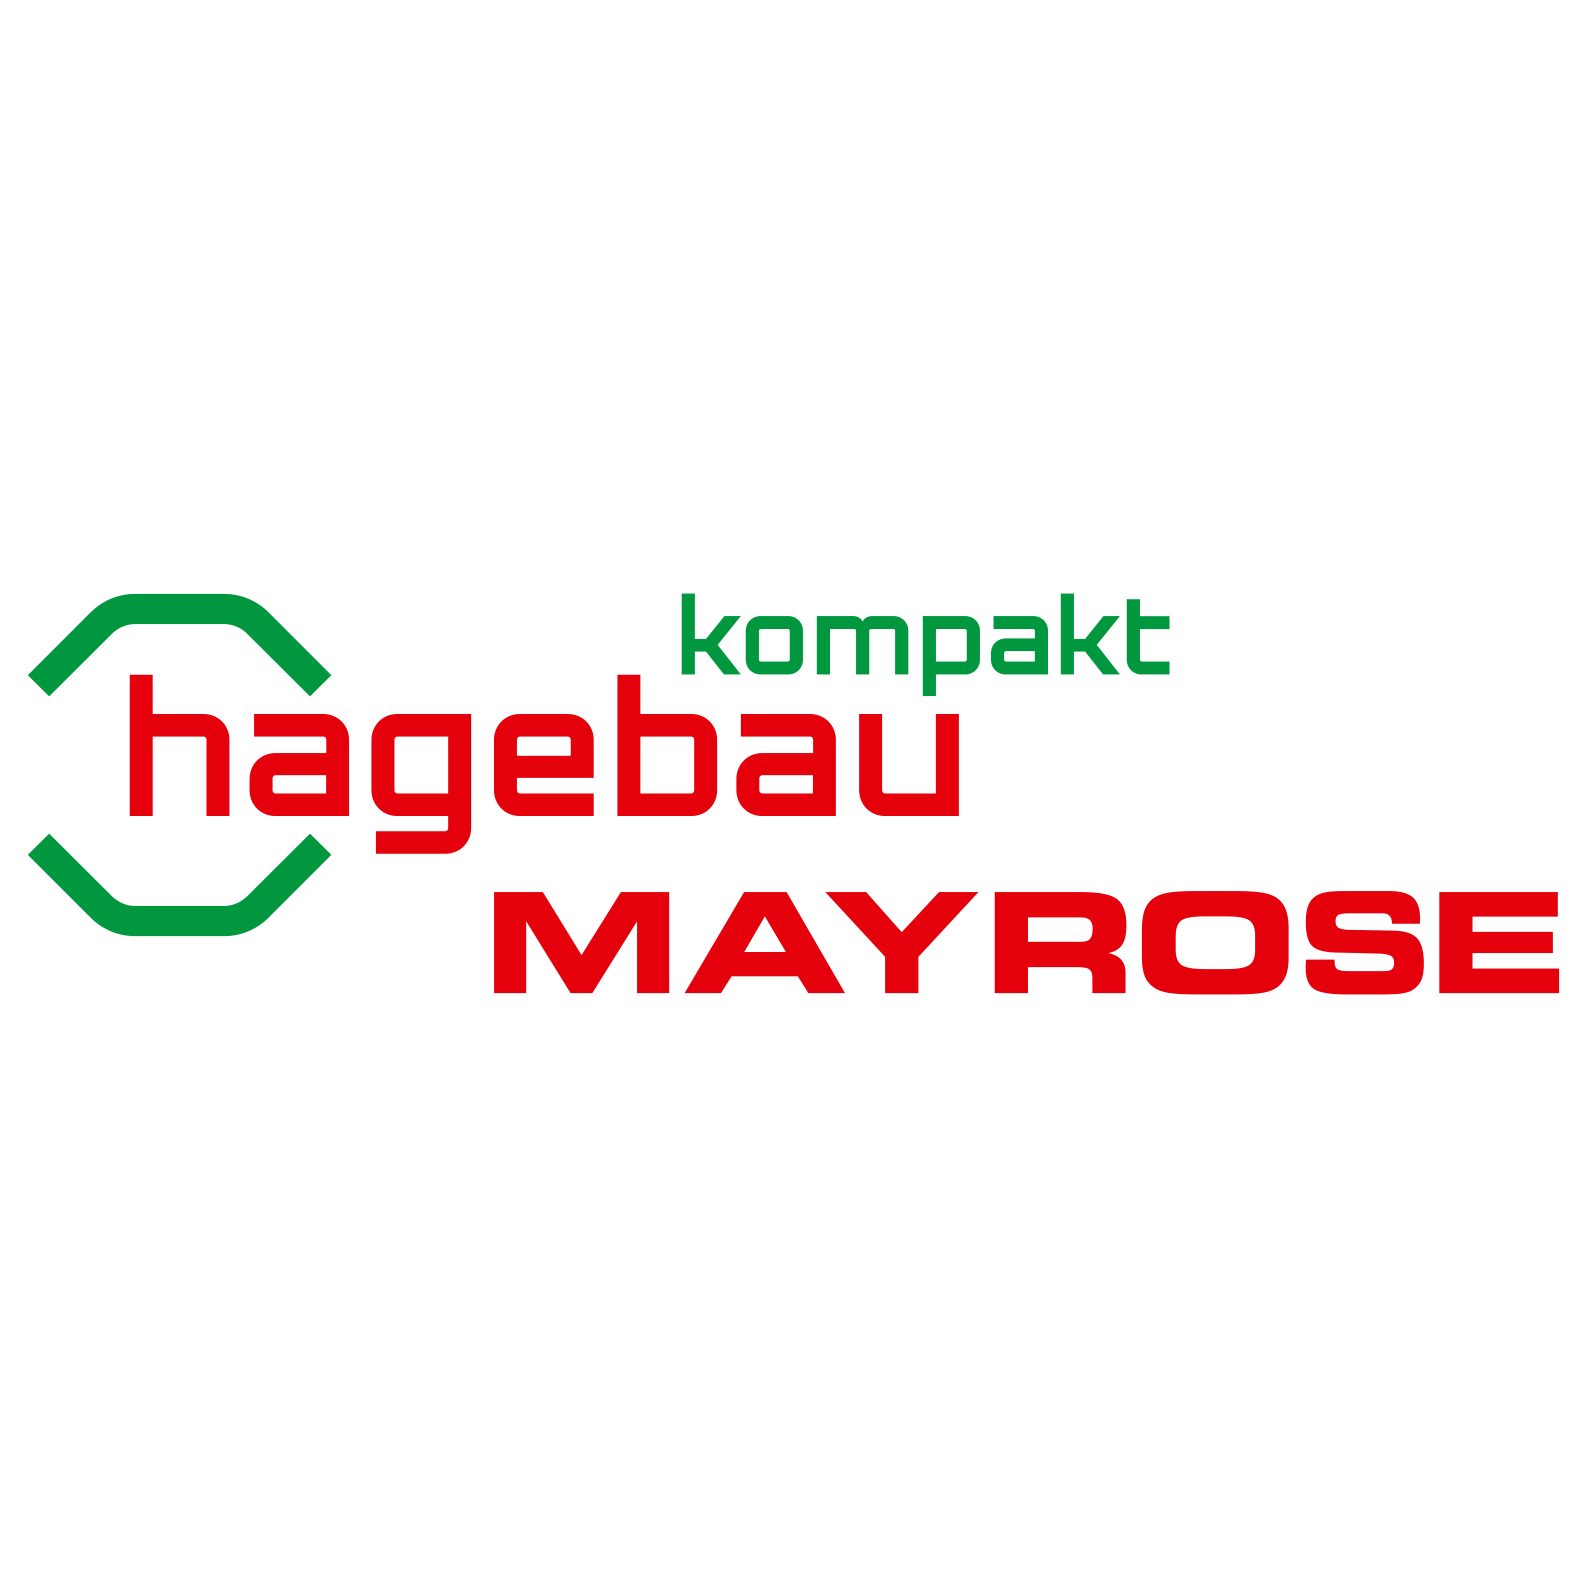 Logo hagebau kompakt / Mayrose-Rheine GmbH & Co. KG